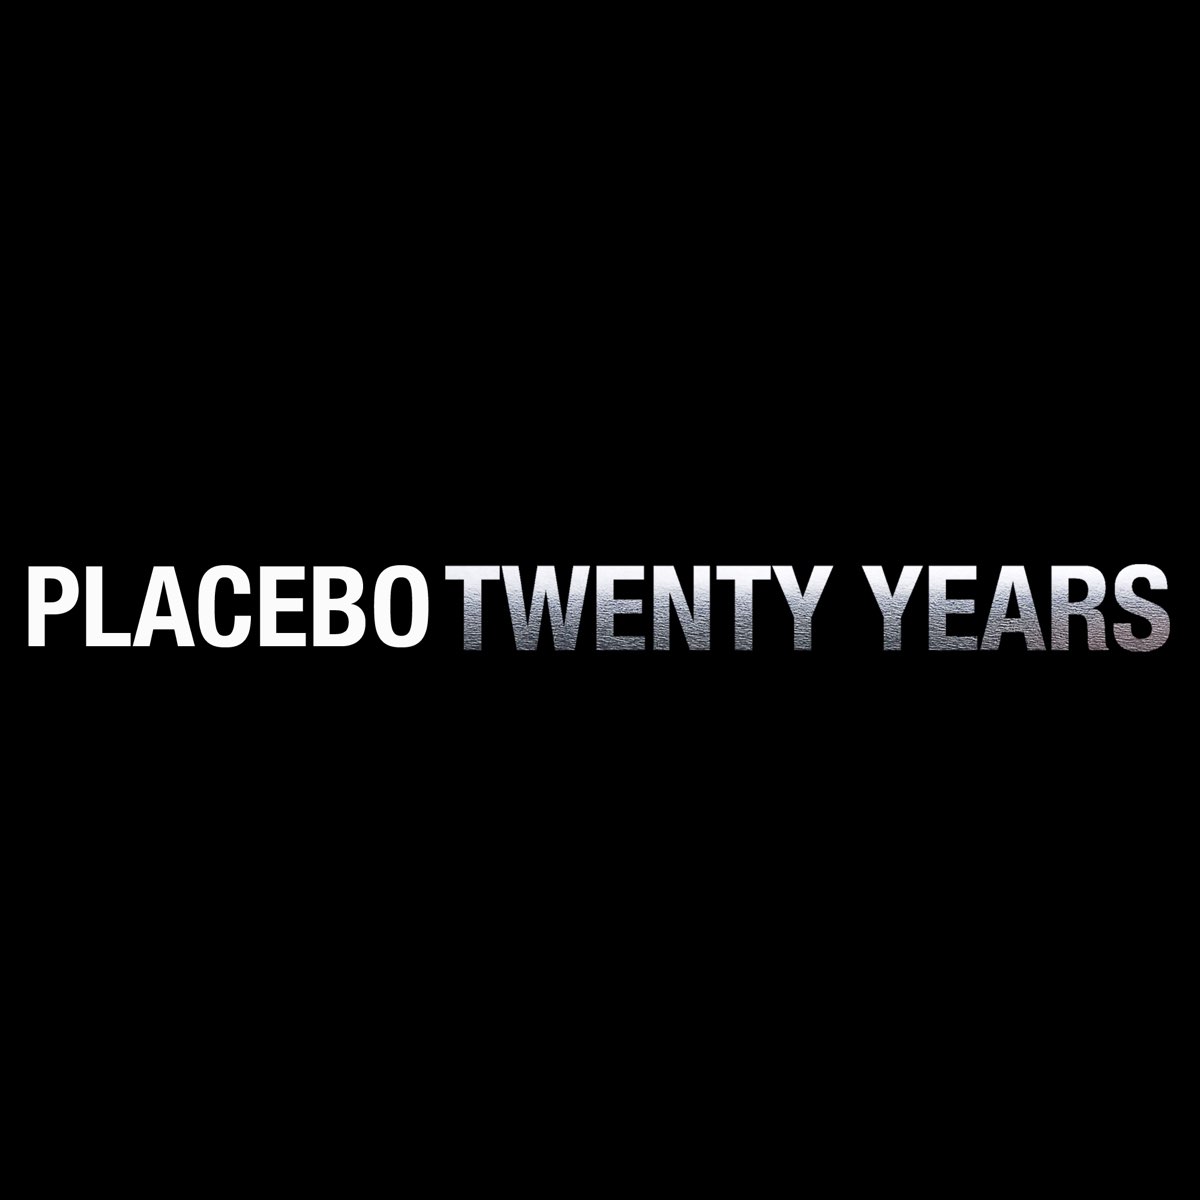 It was twenty years. Placebo twenty years. Placebo without you i'm nothing. Обложка Placebo 20 years of Placebo. Обложки альбомов плацебо Placebo.